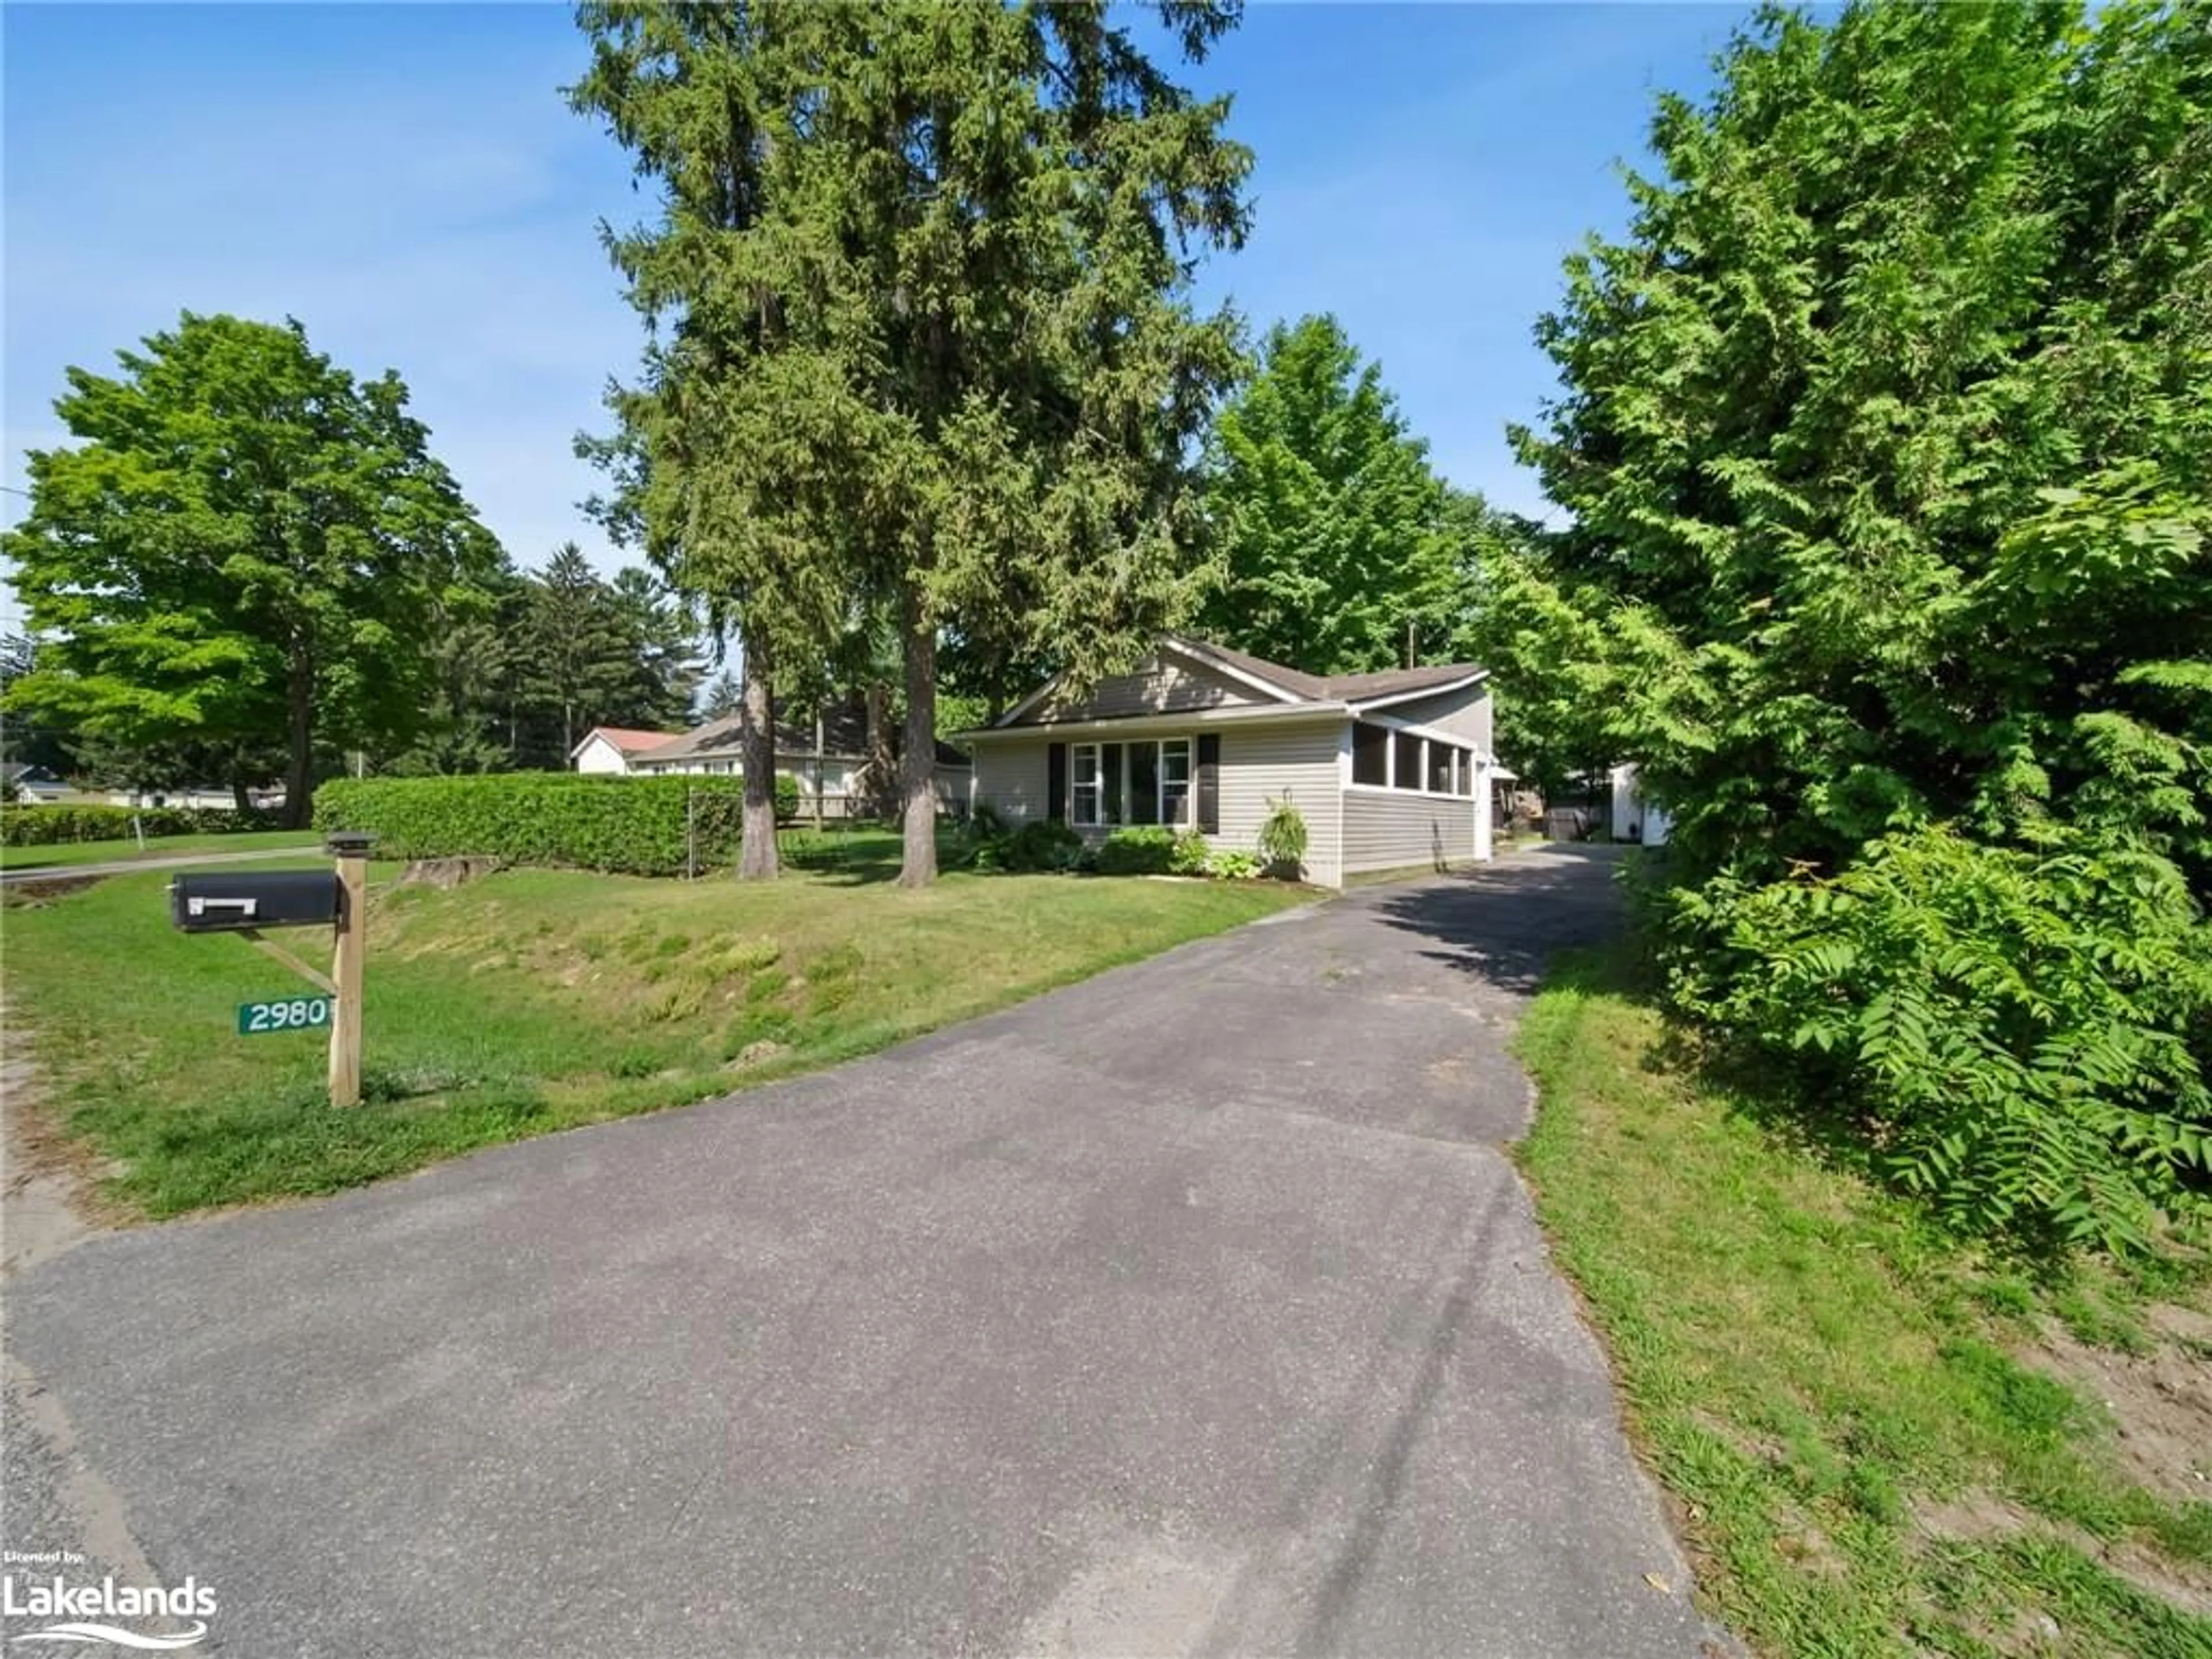 Frontside or backside of a home for 2980 Lakeside Dr, Severn Ontario L3V 0V9